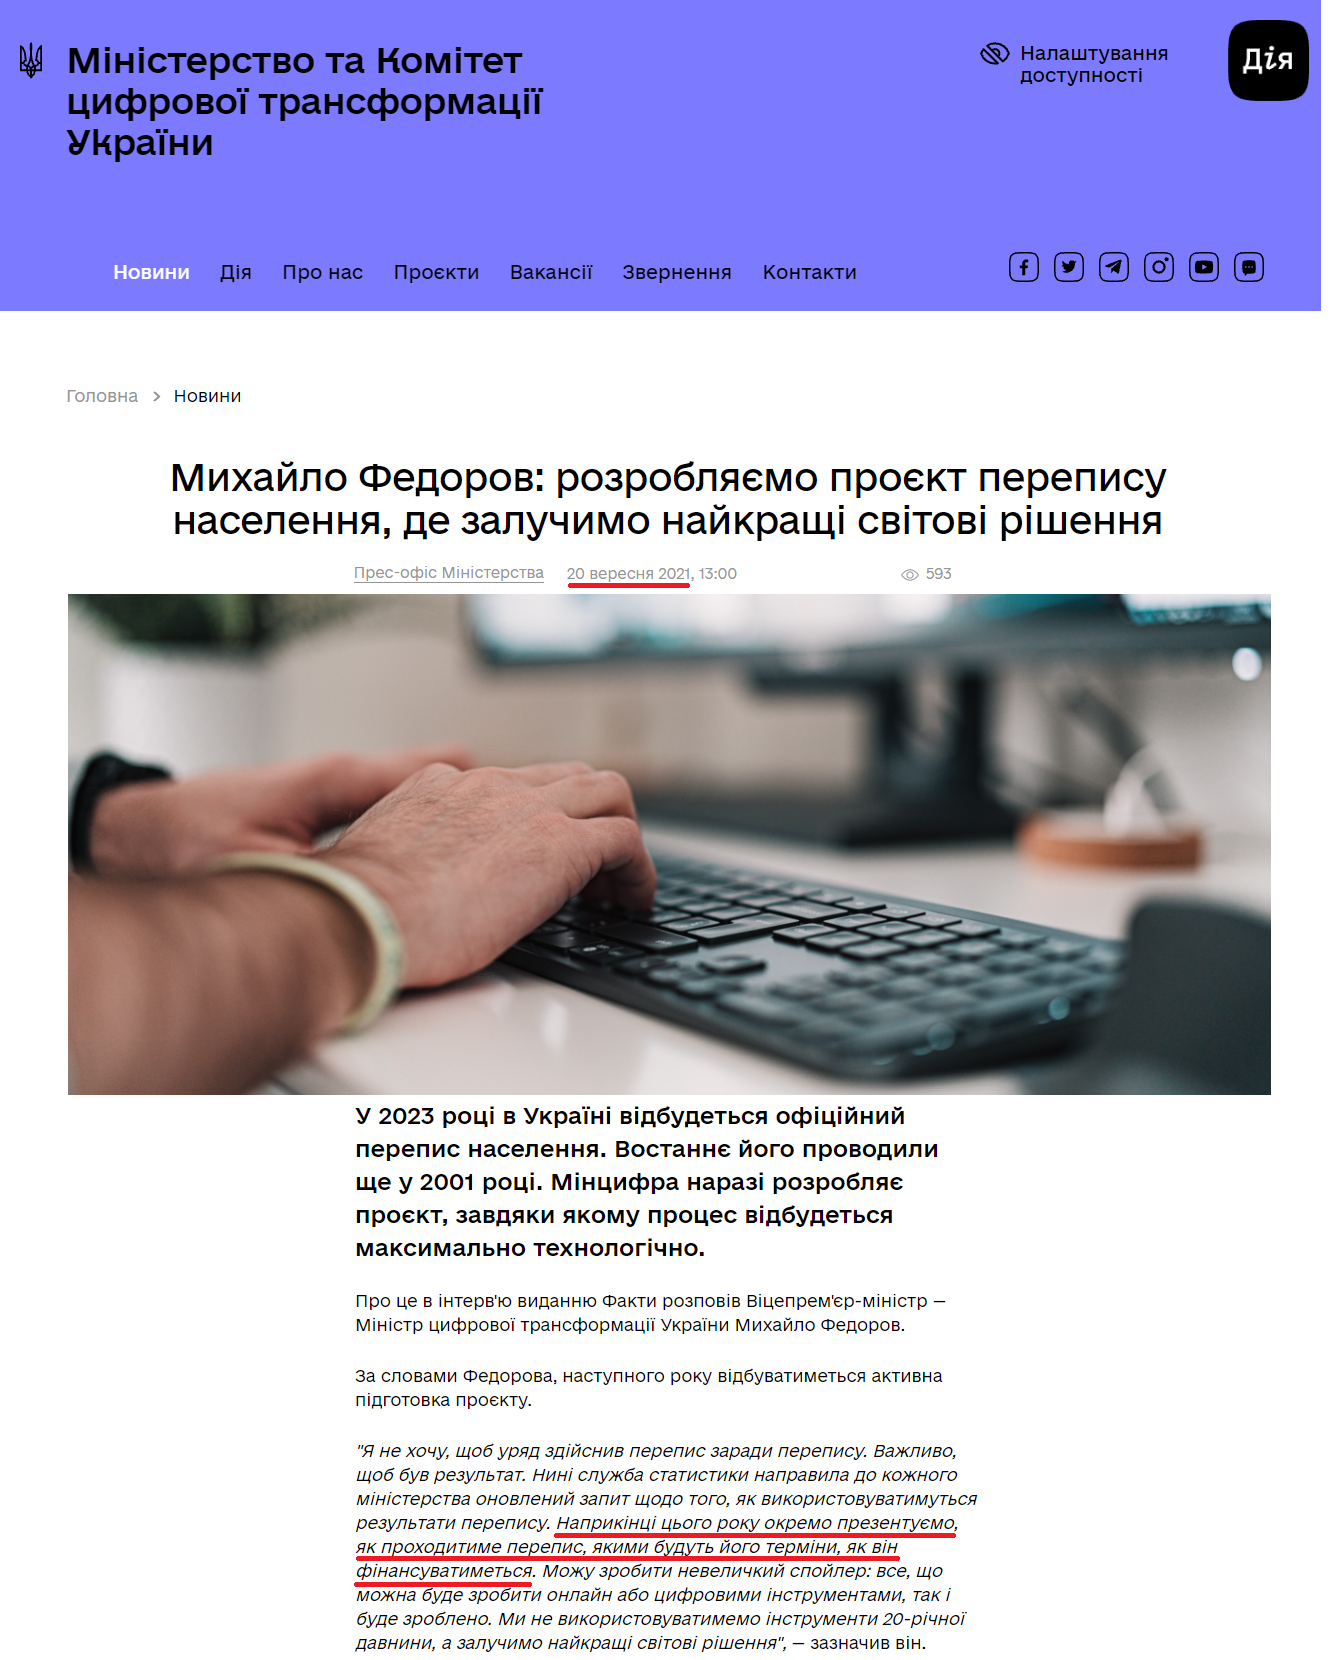 https://thedigital.gov.ua/news/mikhaylo-fedorov-rozroblyaemo-proekt-perepisu-naselennya-de-zaluchimo-naykrashchi-svitovi-rishennya